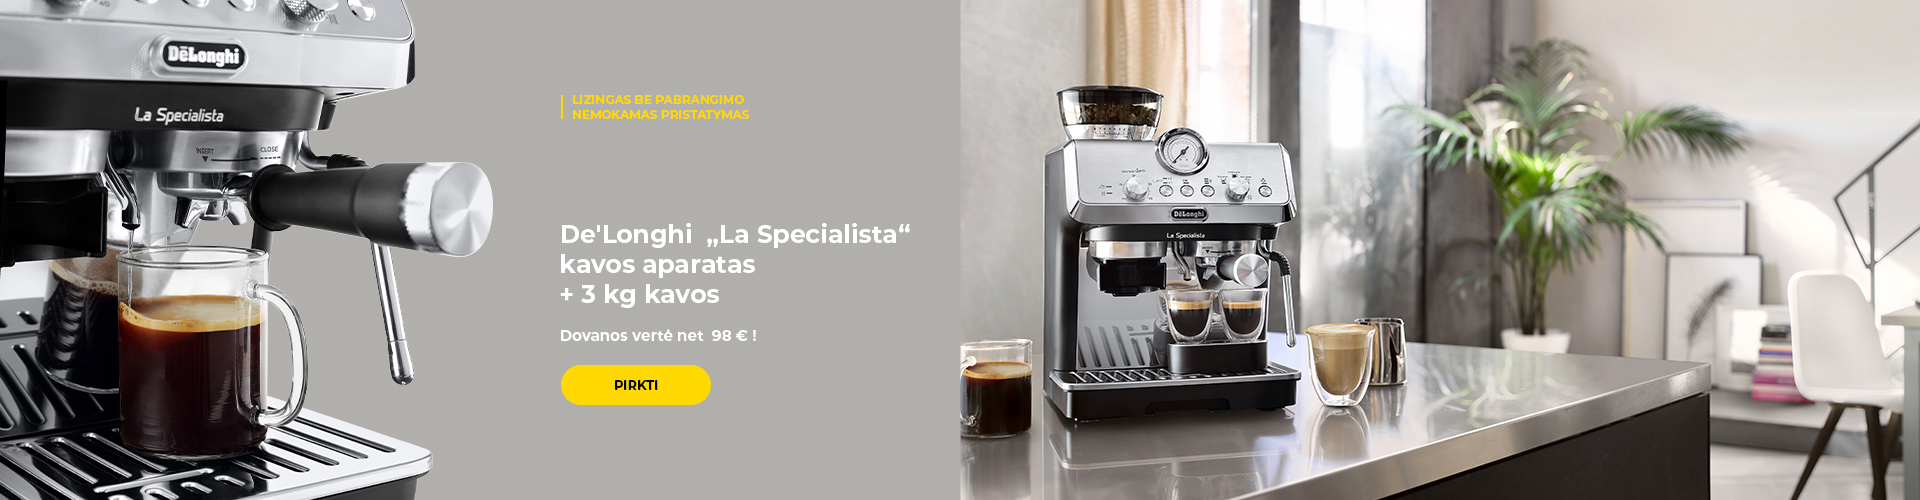 De'Longhi „La Specialista“ kavos aparatas + 3 kg kavos